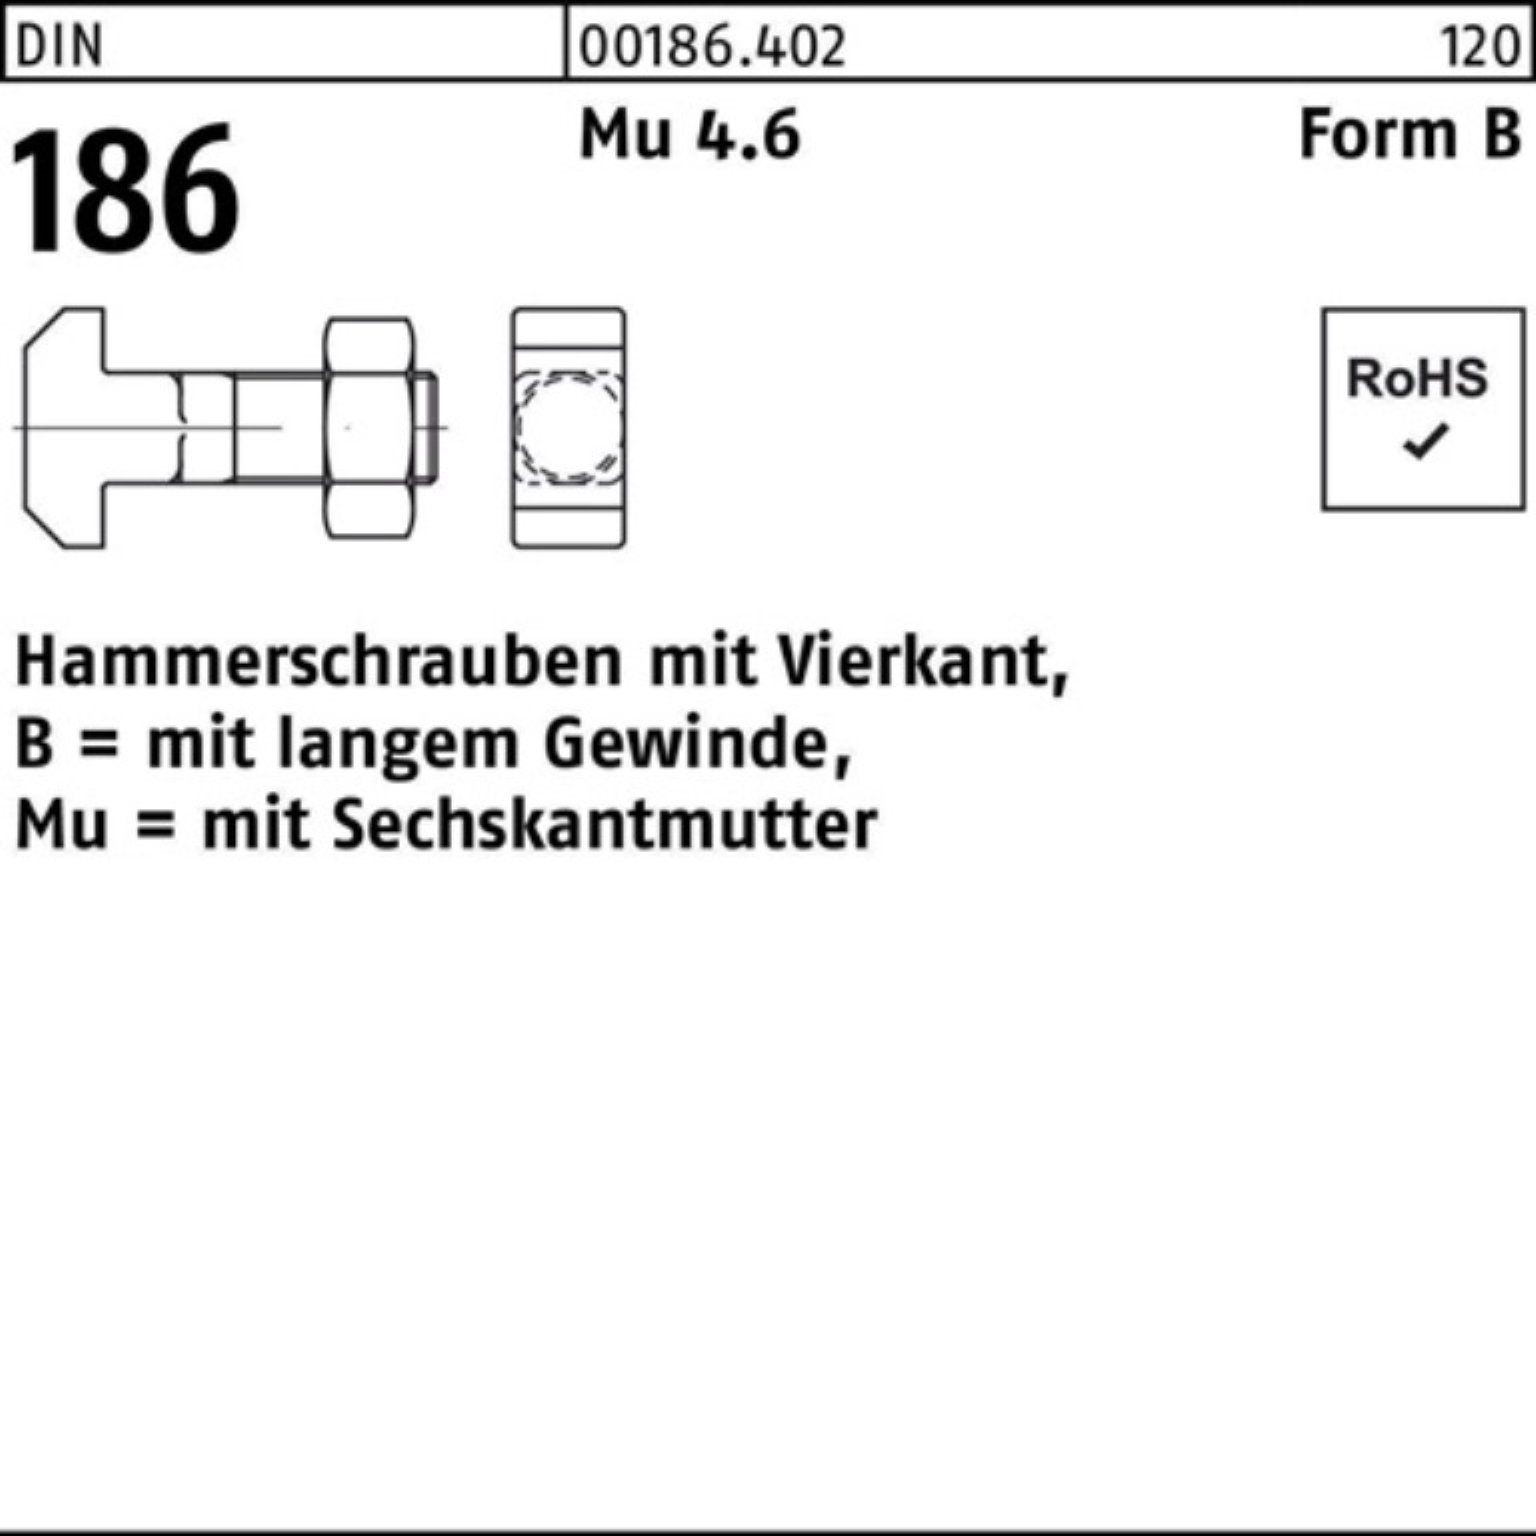 Reyher Schraube 100er Hammerschraube DIN FormB 6-ktmutter 110 BM Pack 186 24x Vierkant